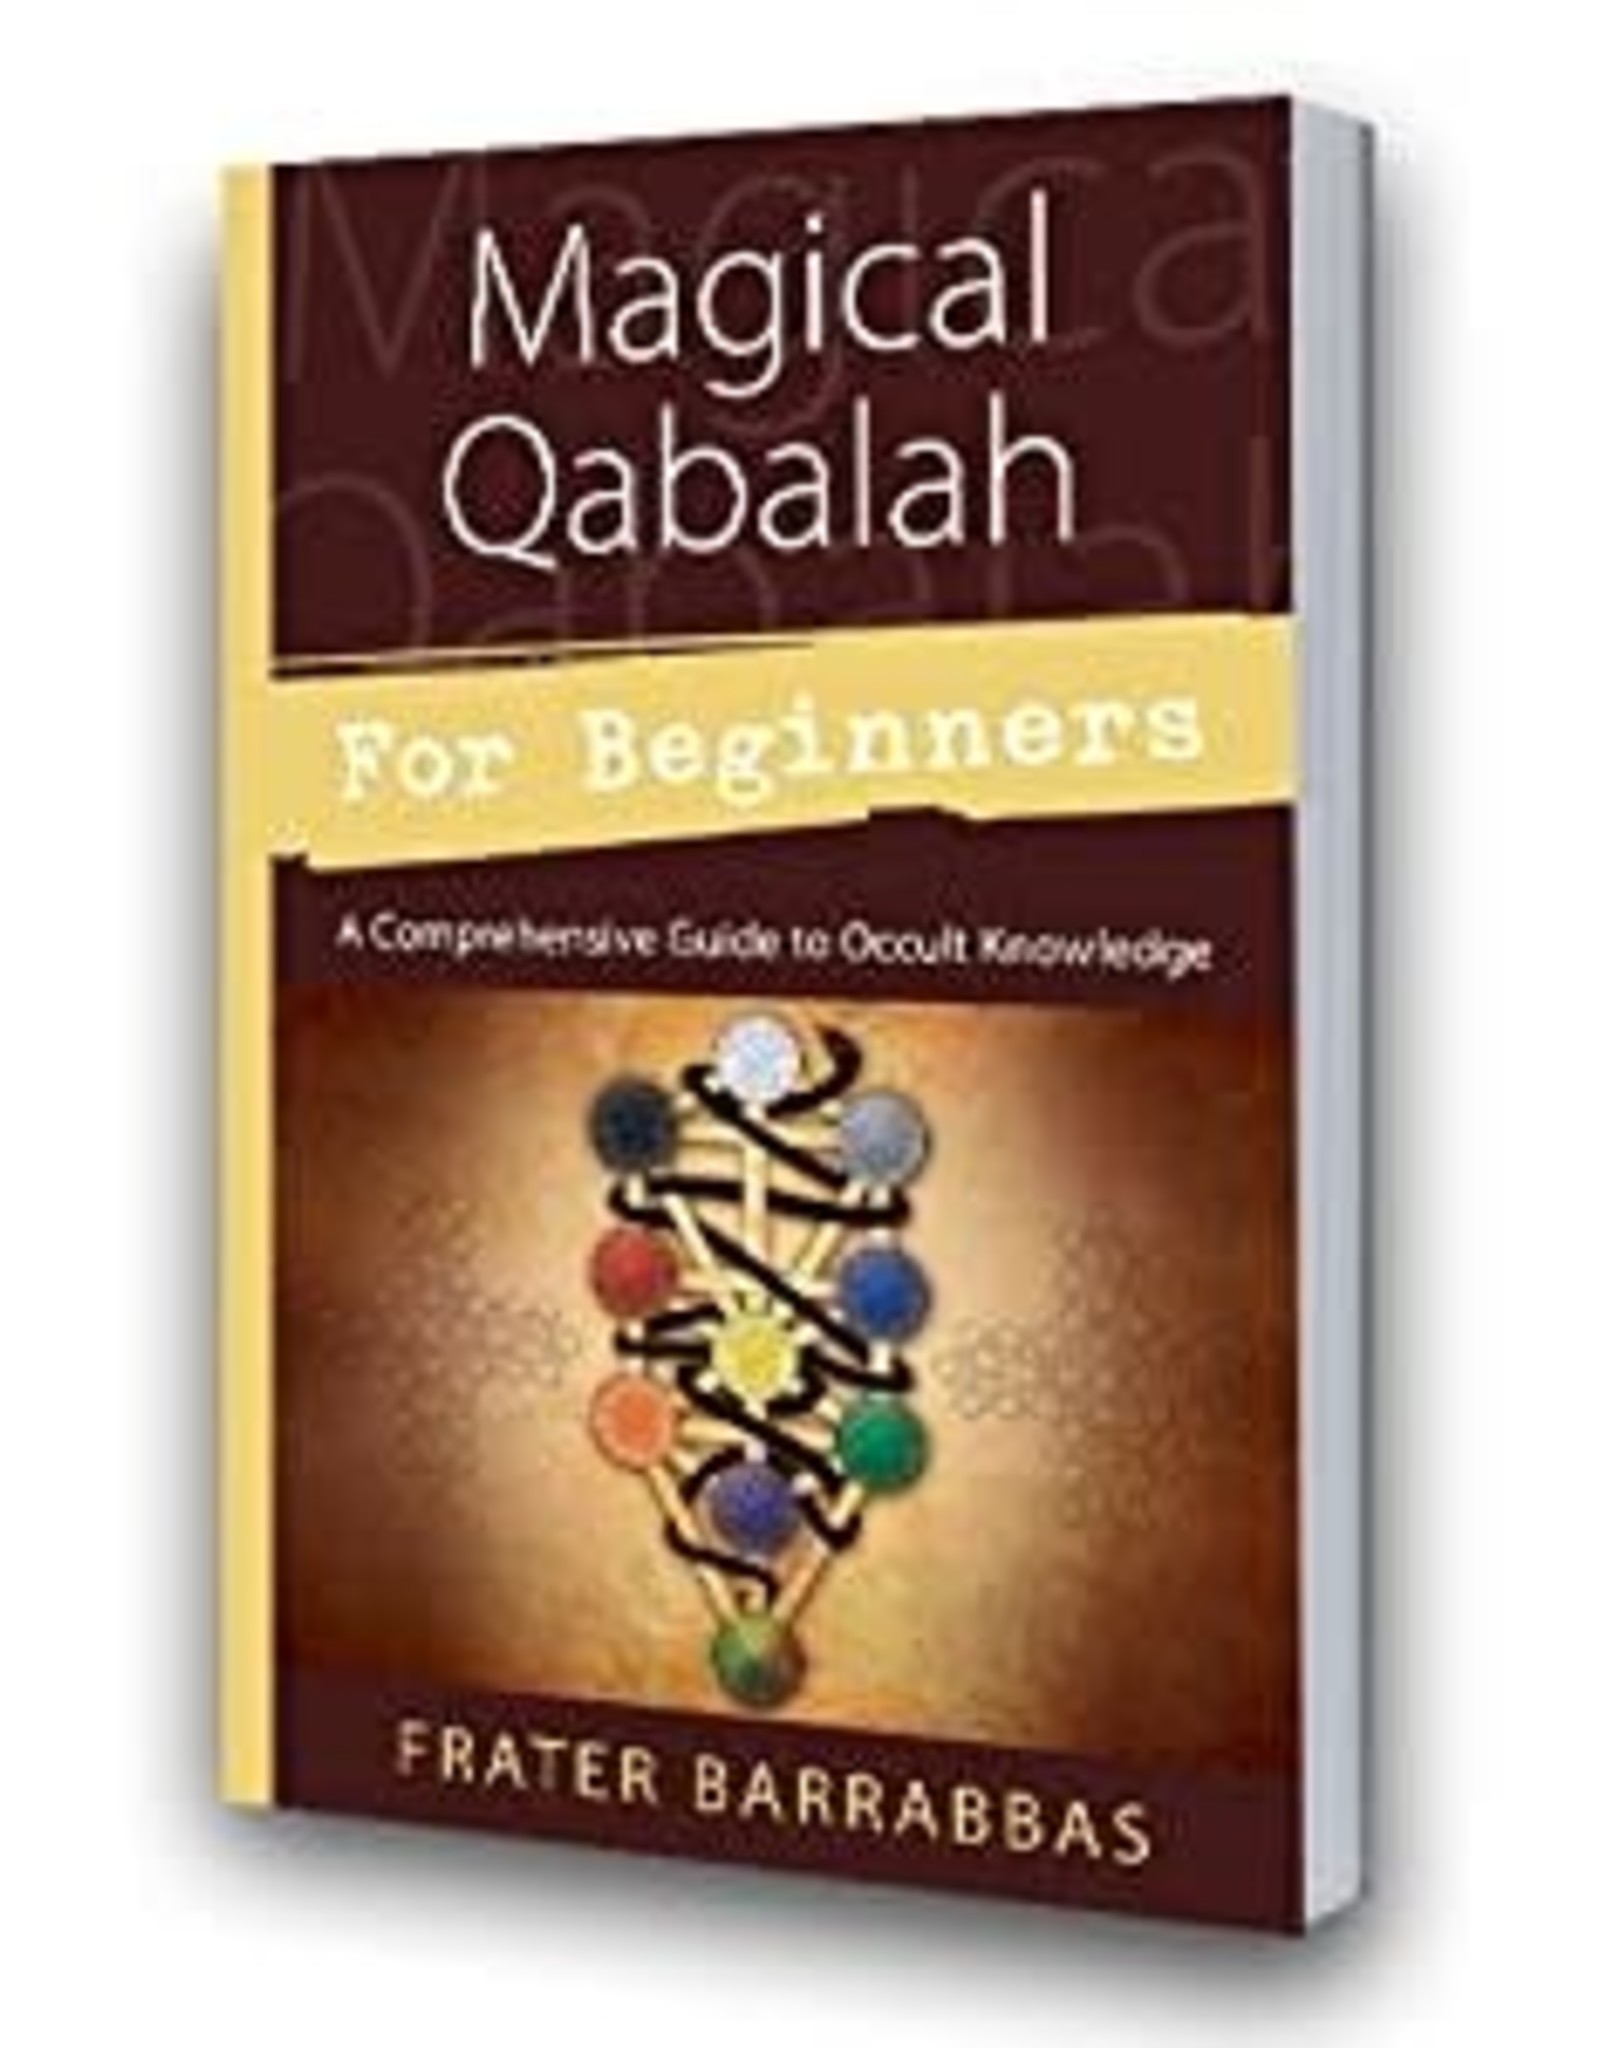 Frater Barrabbas Magical Qabalah for Beginners by Frater Barrabbas